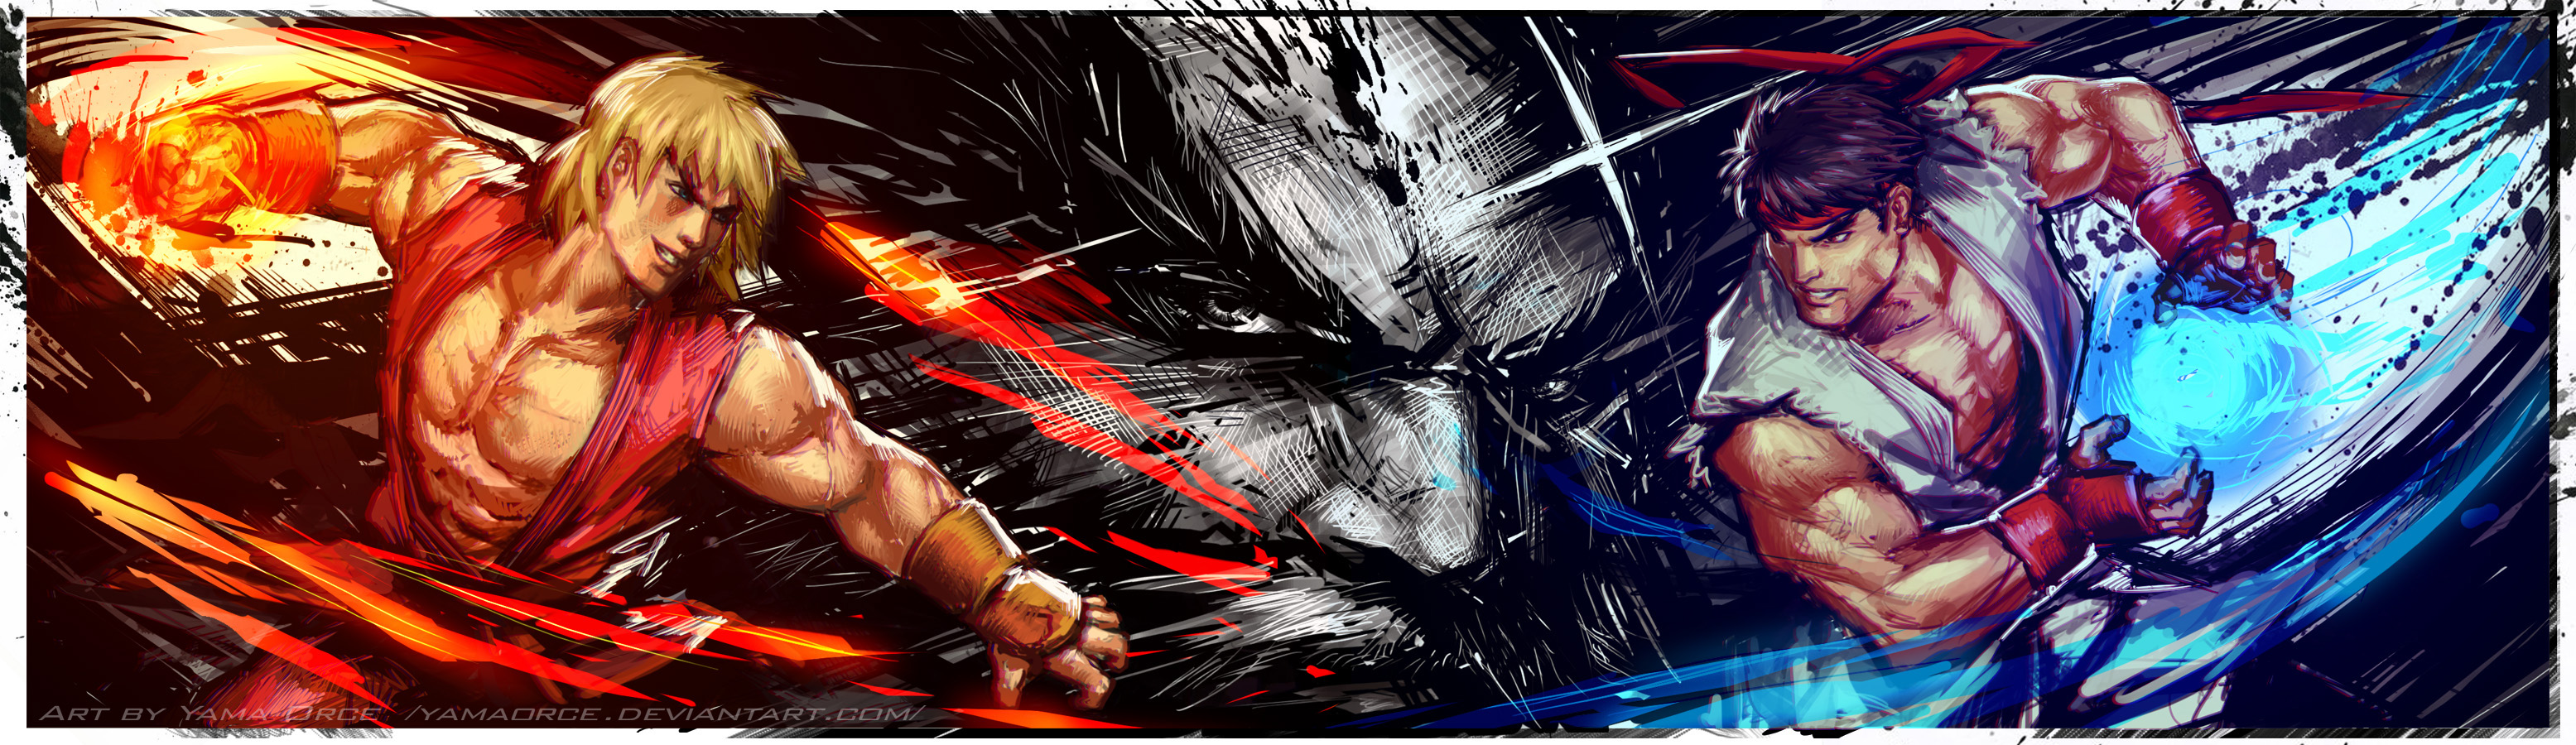 Ken & Ryu Illustration - Street Fighter IV Art Gallery